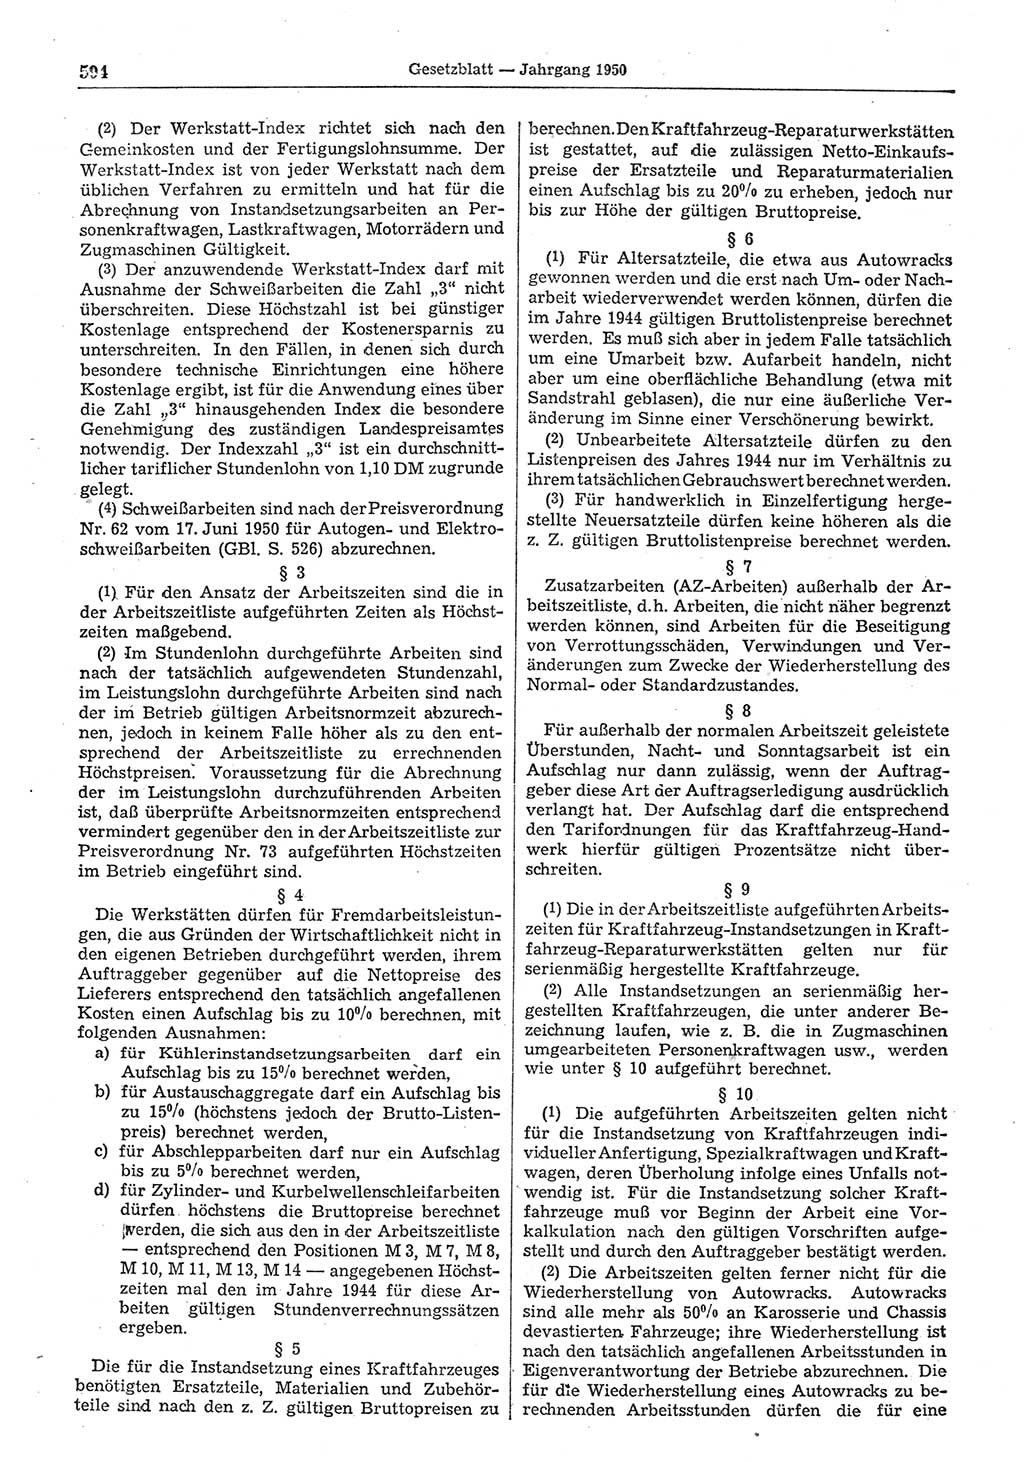 Gesetzblatt (GBl.) der Deutschen Demokratischen Republik (DDR) 1950, Seite 594 (GBl. DDR 1950, S. 594)